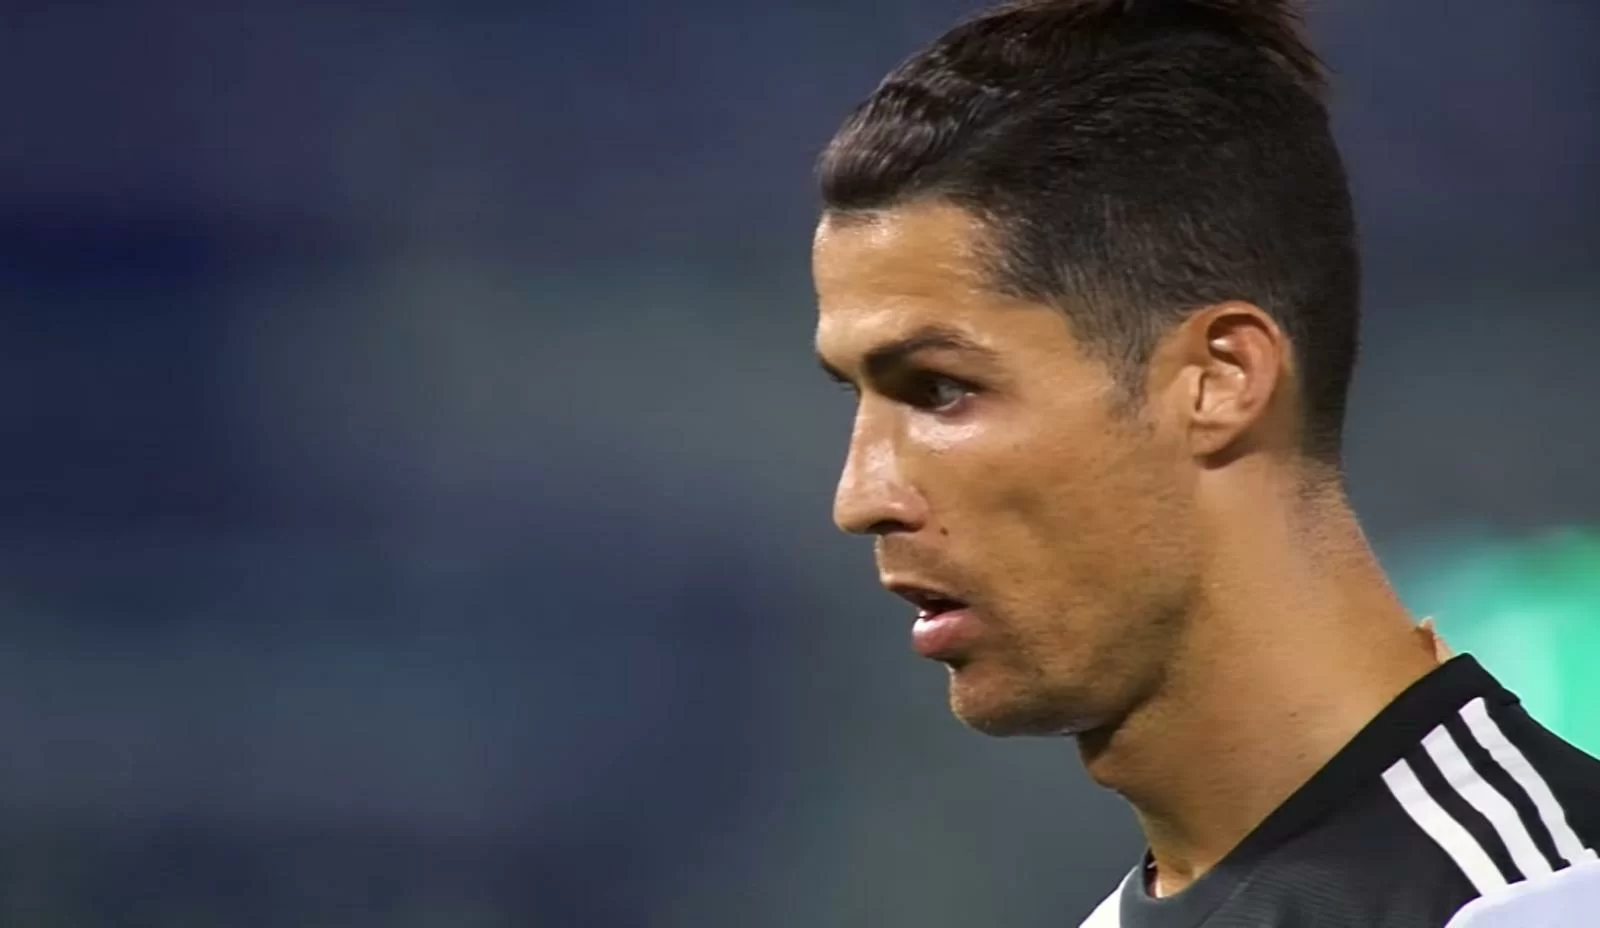 Ronaldo a fine partita: “La squadra lavora bene, questo è un punto guadagnato”